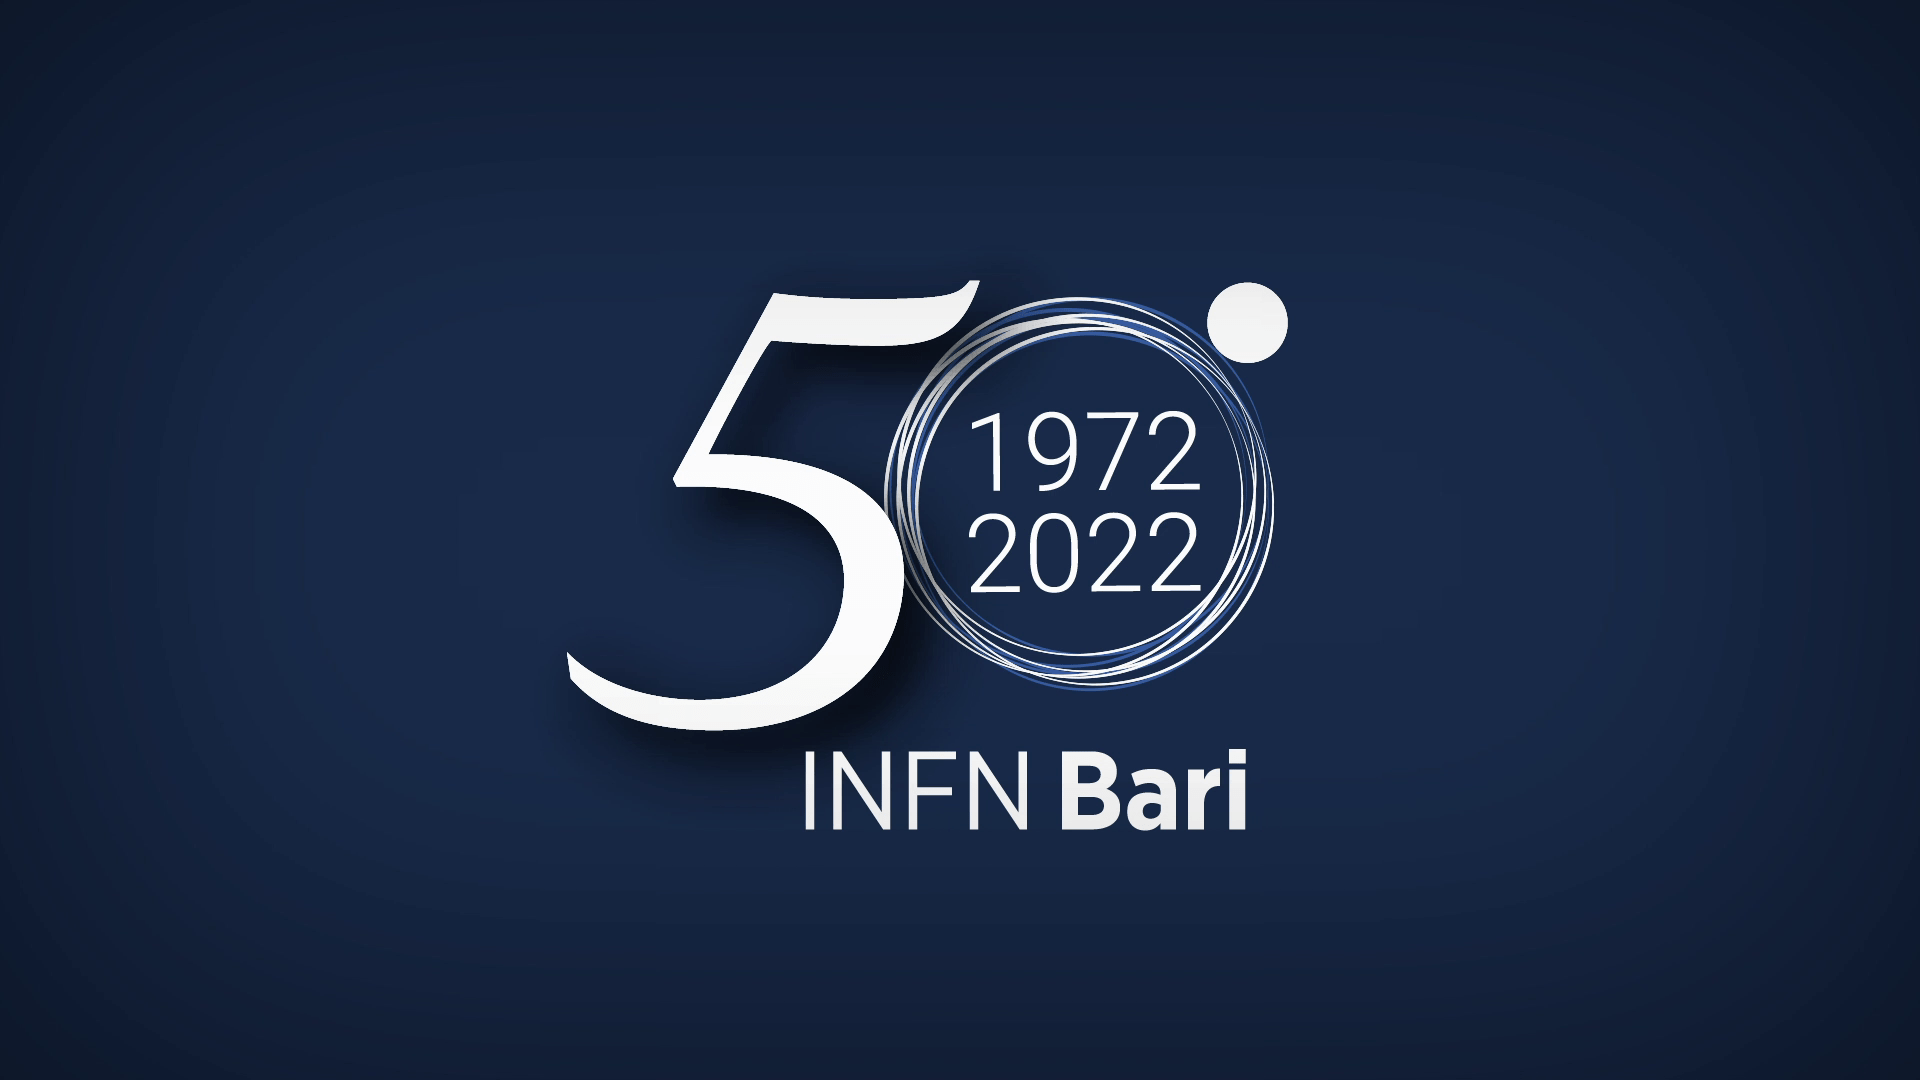 Video dei 50 anni della sezione INFN di Bari: Ricerca, Tecnologia, Persone e Divulgazione